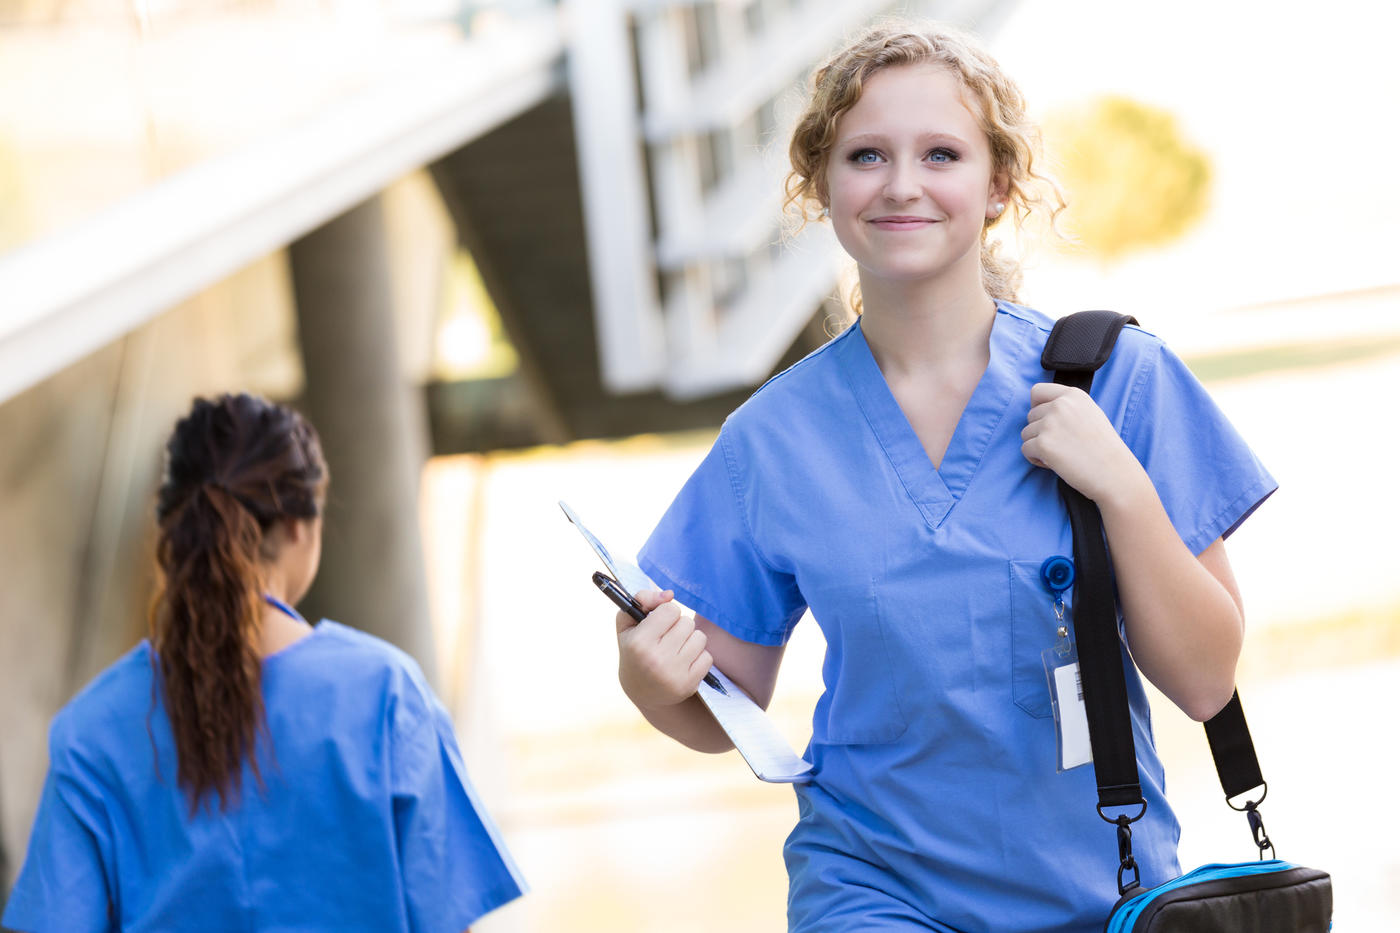 Smiling nurse with laptop bag walking outdoors